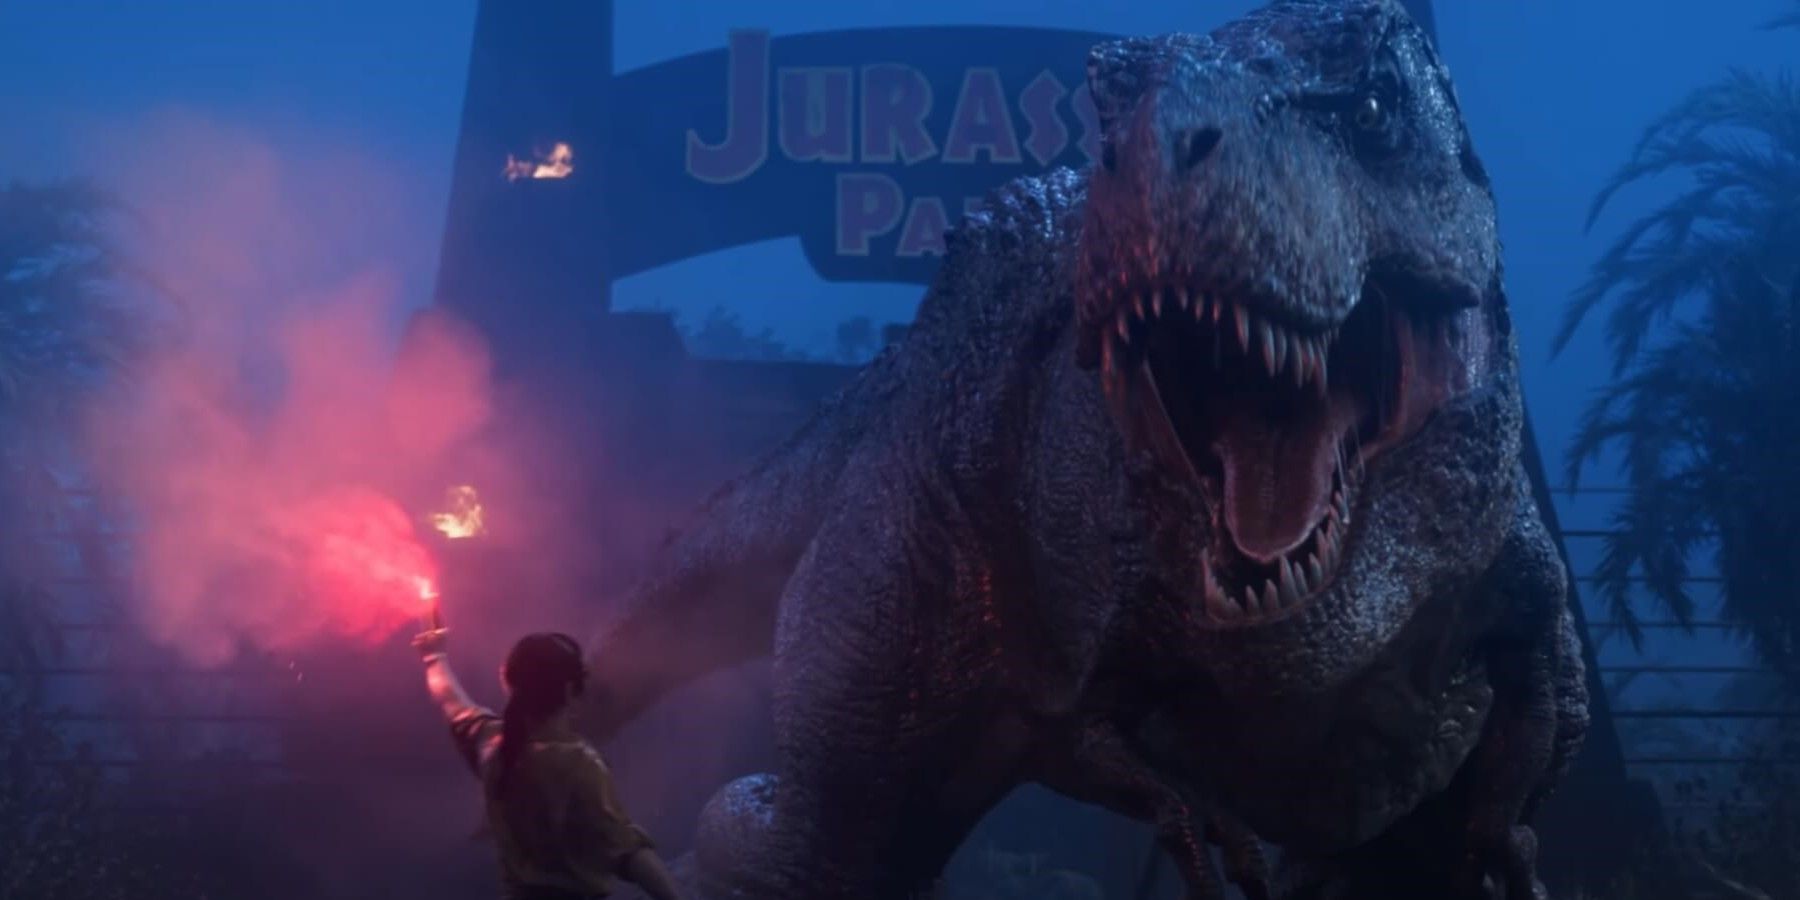 Jurassic Park Survival Game Revealed